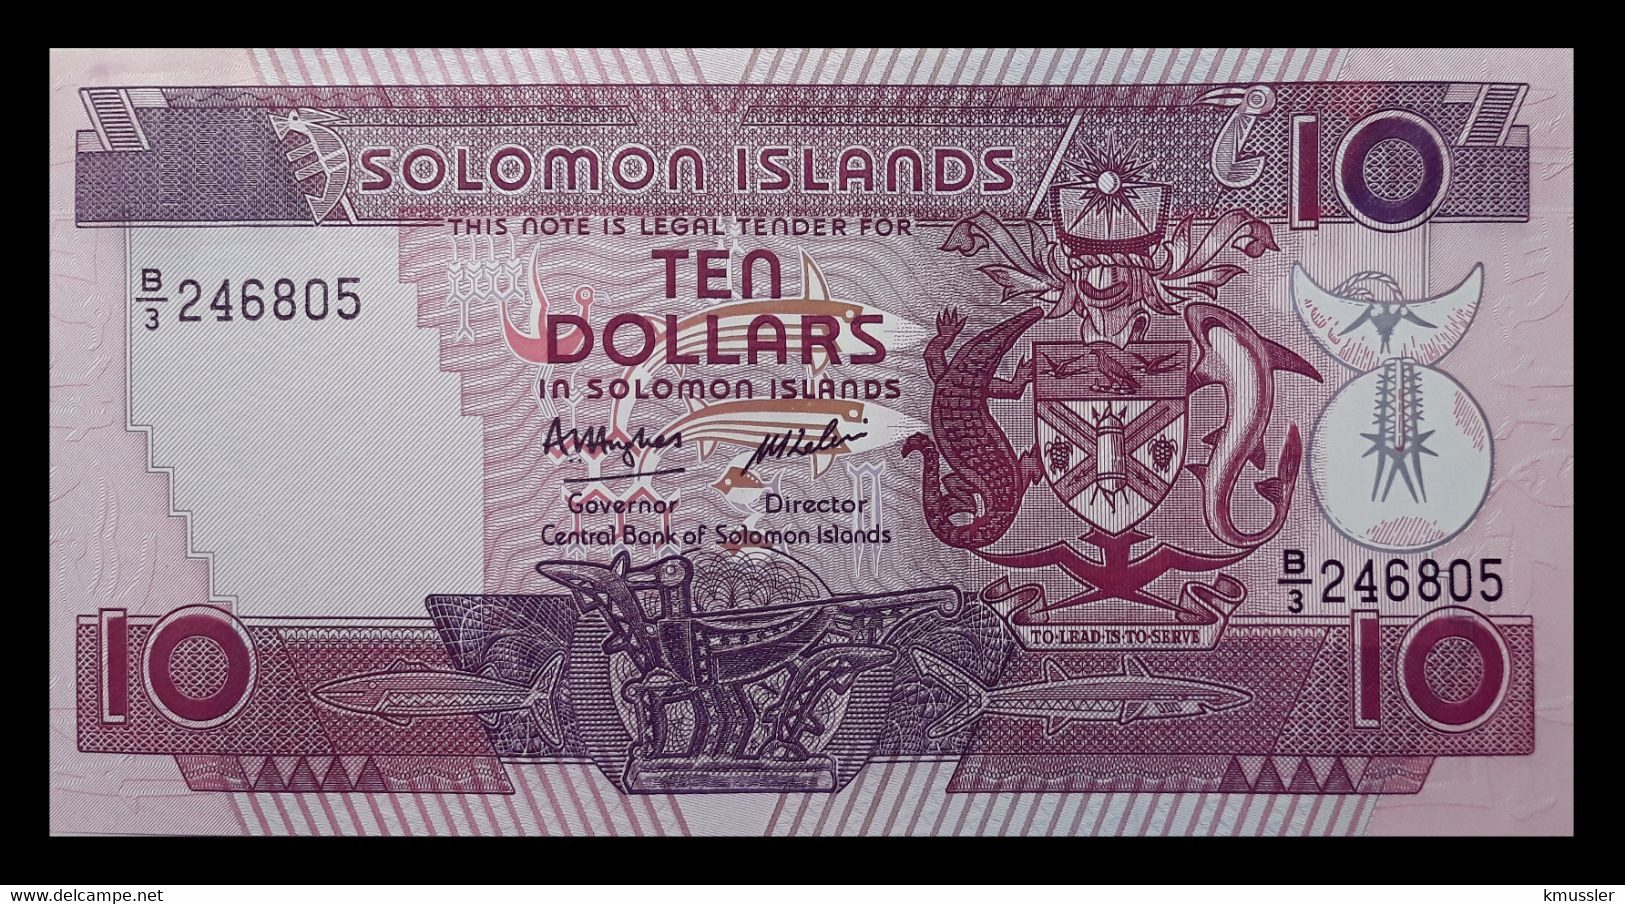 # # # Banknote Von Den Solomon-Inseln 10 Dollars UNC # # # - Solomon Islands